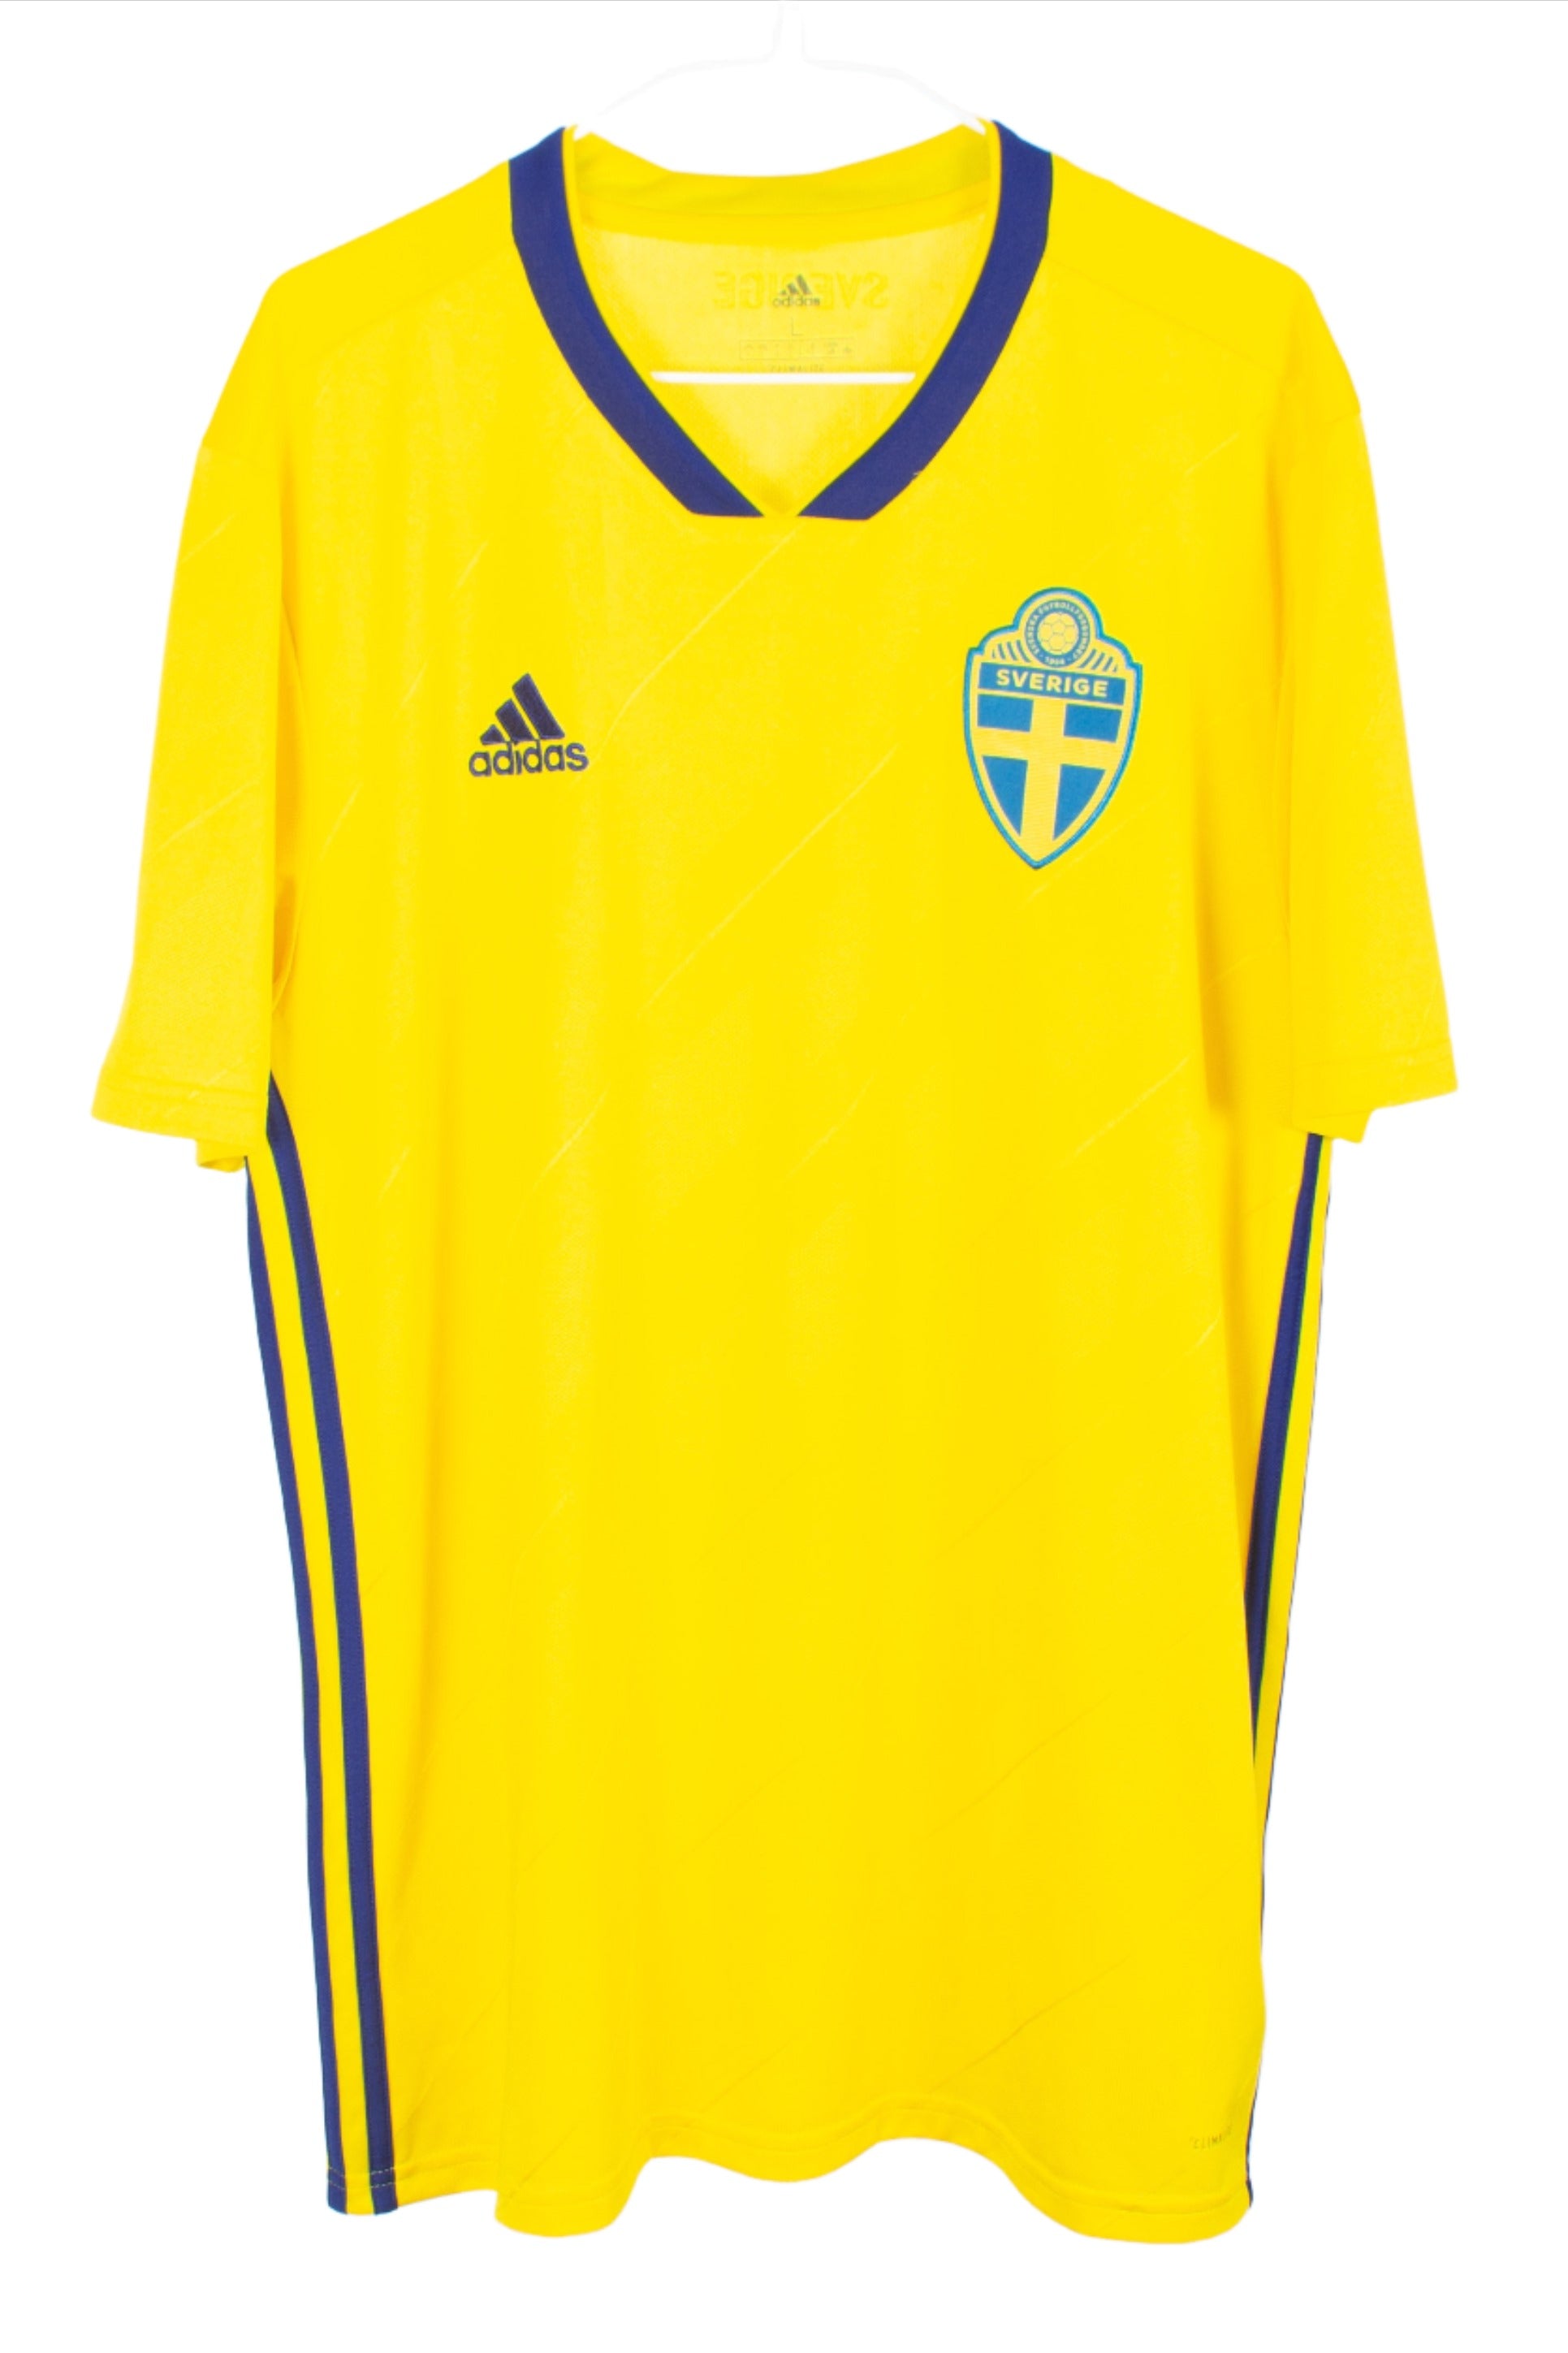 Sweden 2018 Home Shirt (L)